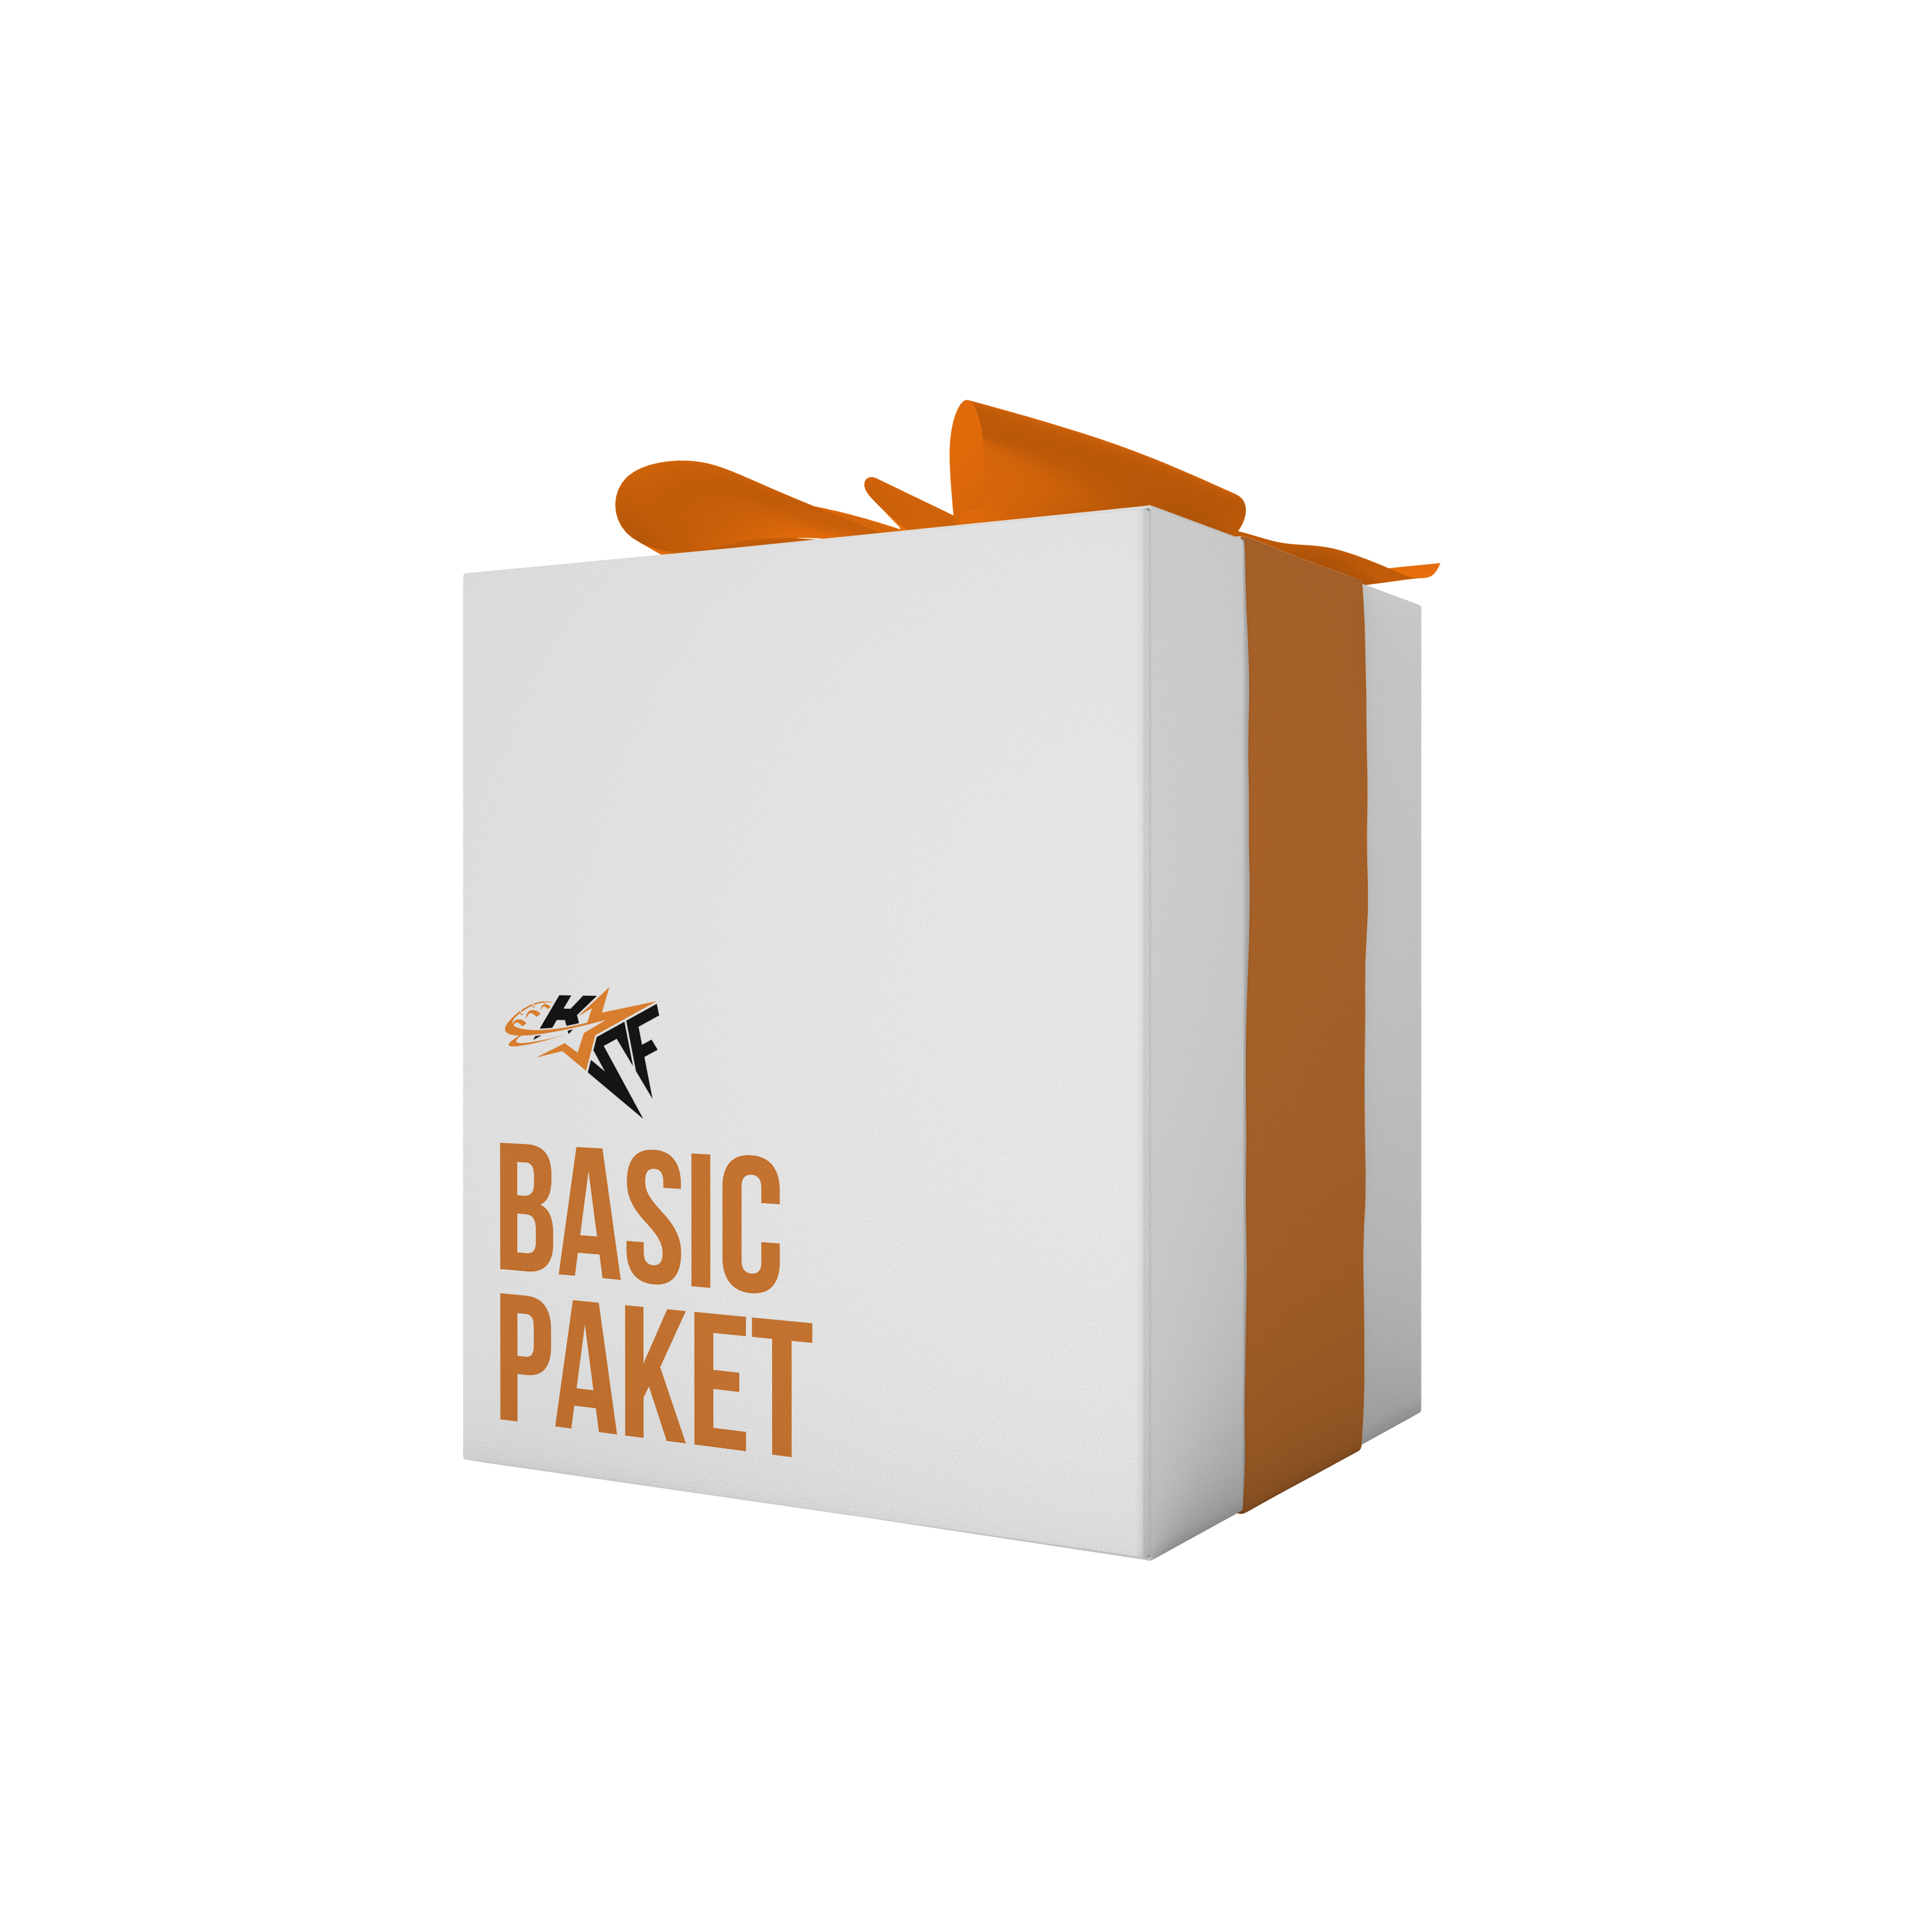 Basic paket